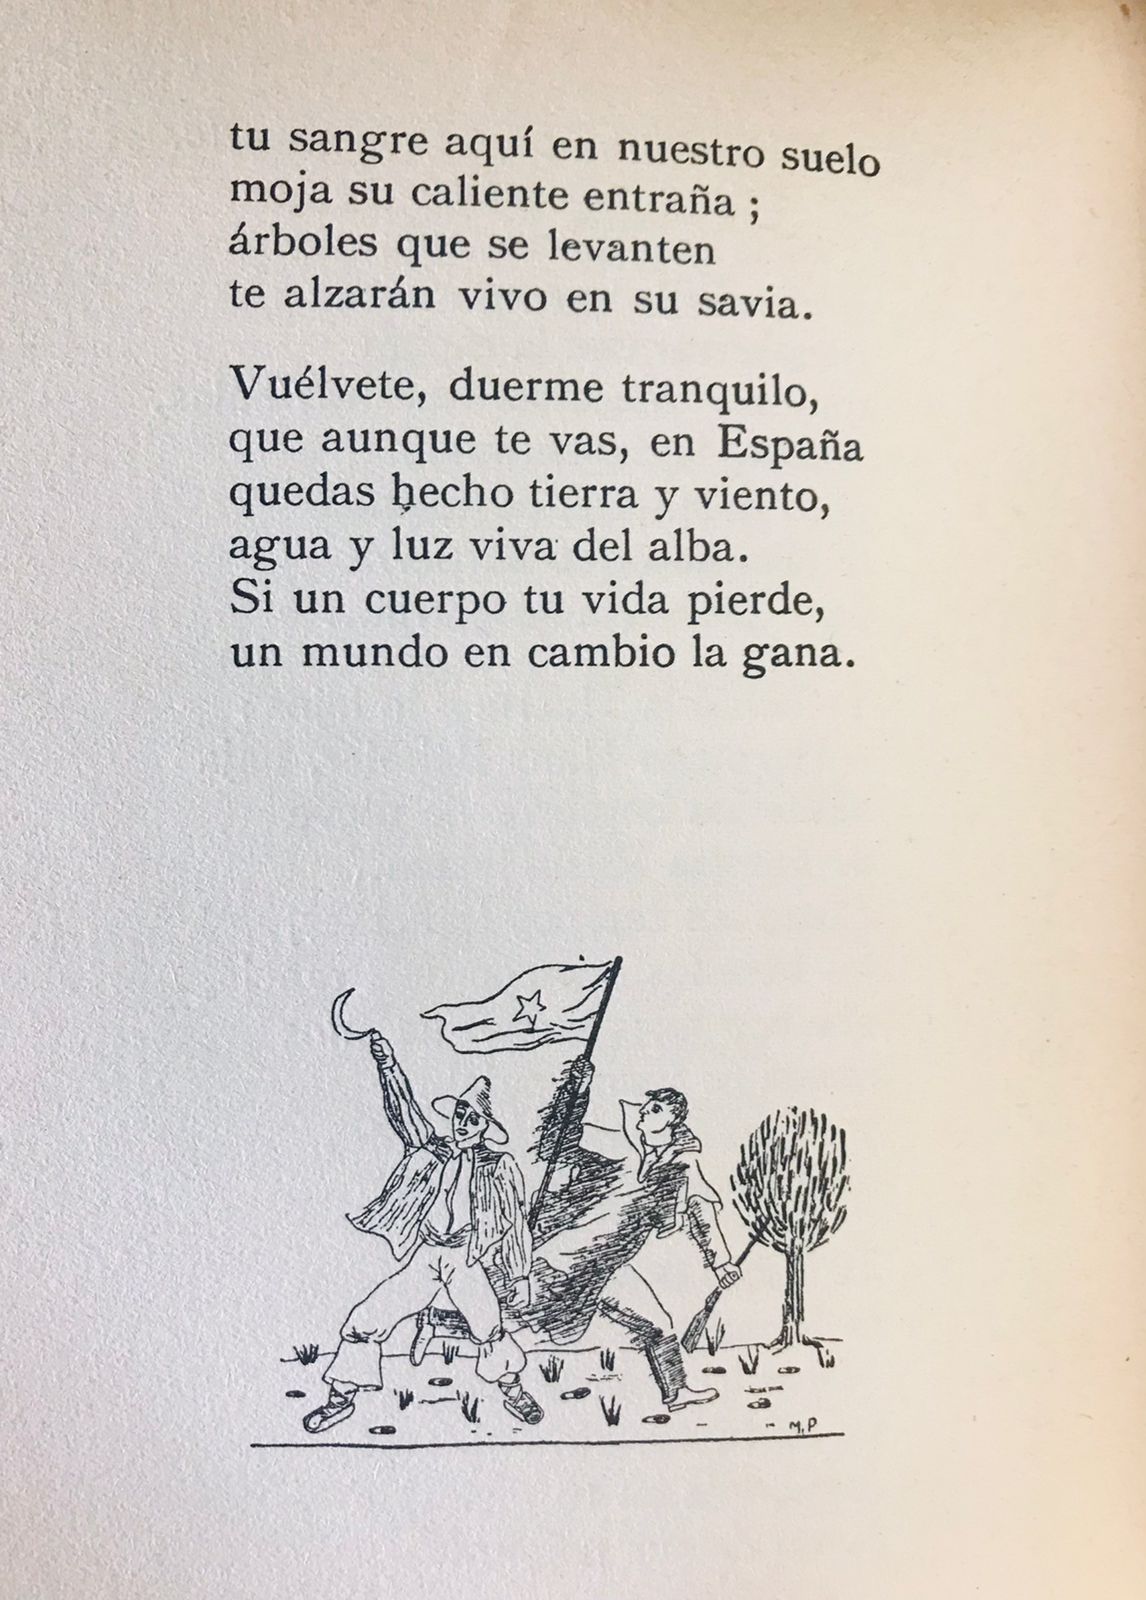 Emilio Prados 	Llanto en la sangre. Romances 1933-1936